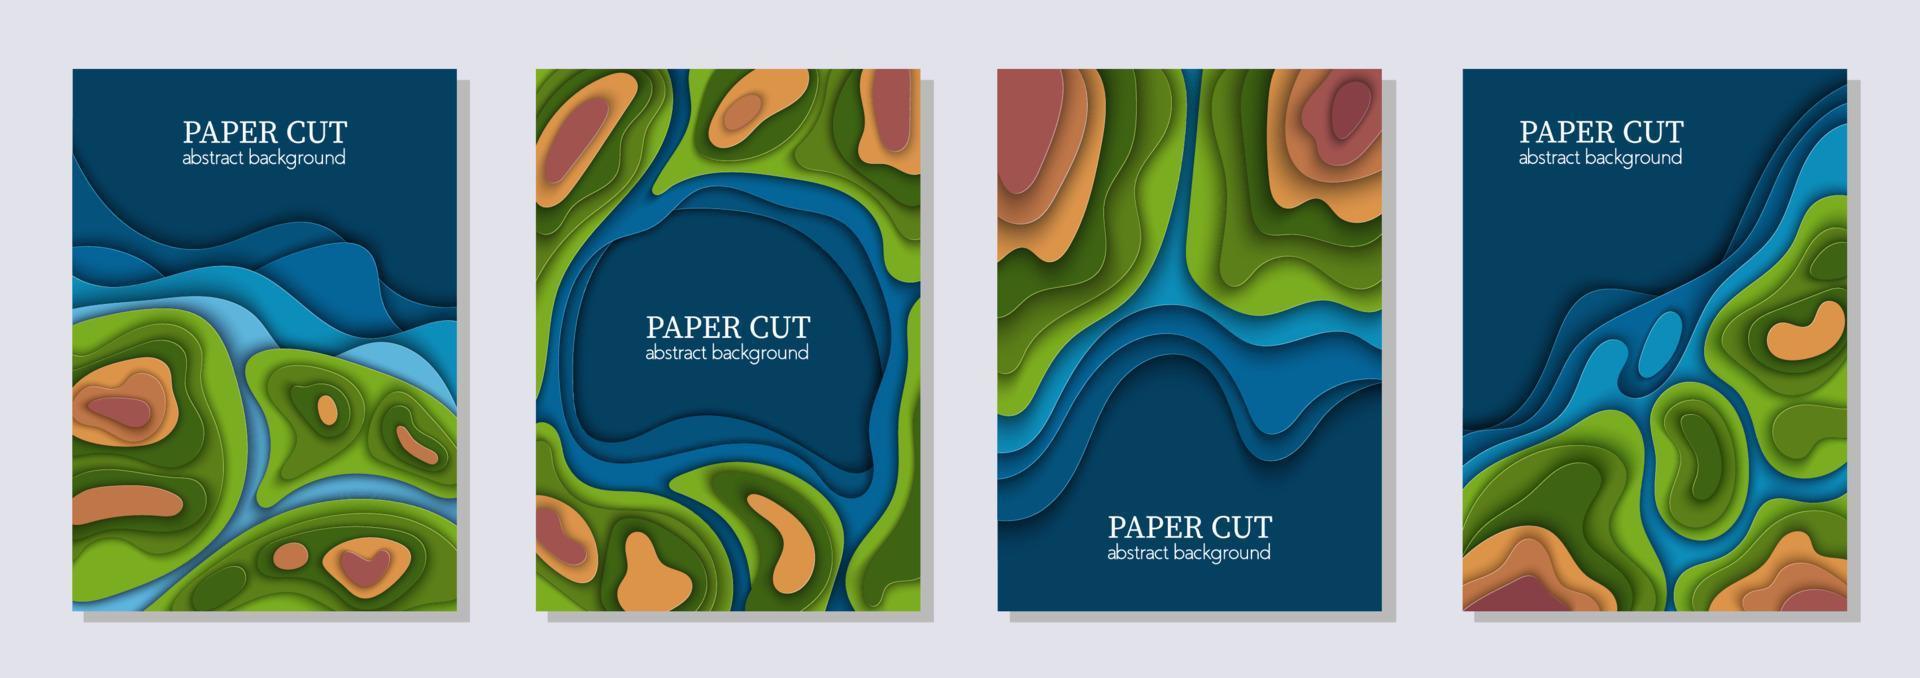 conjunto de vectores verticales de 4 volantes verdes azules con formas de ondas cortadas en papel, mapa mundial de la tierra, ecología. Arte abstracto 3d, diseño de diseño para presentaciones, volantes, carteles, impresiones, decoración, tarjetas, folletos